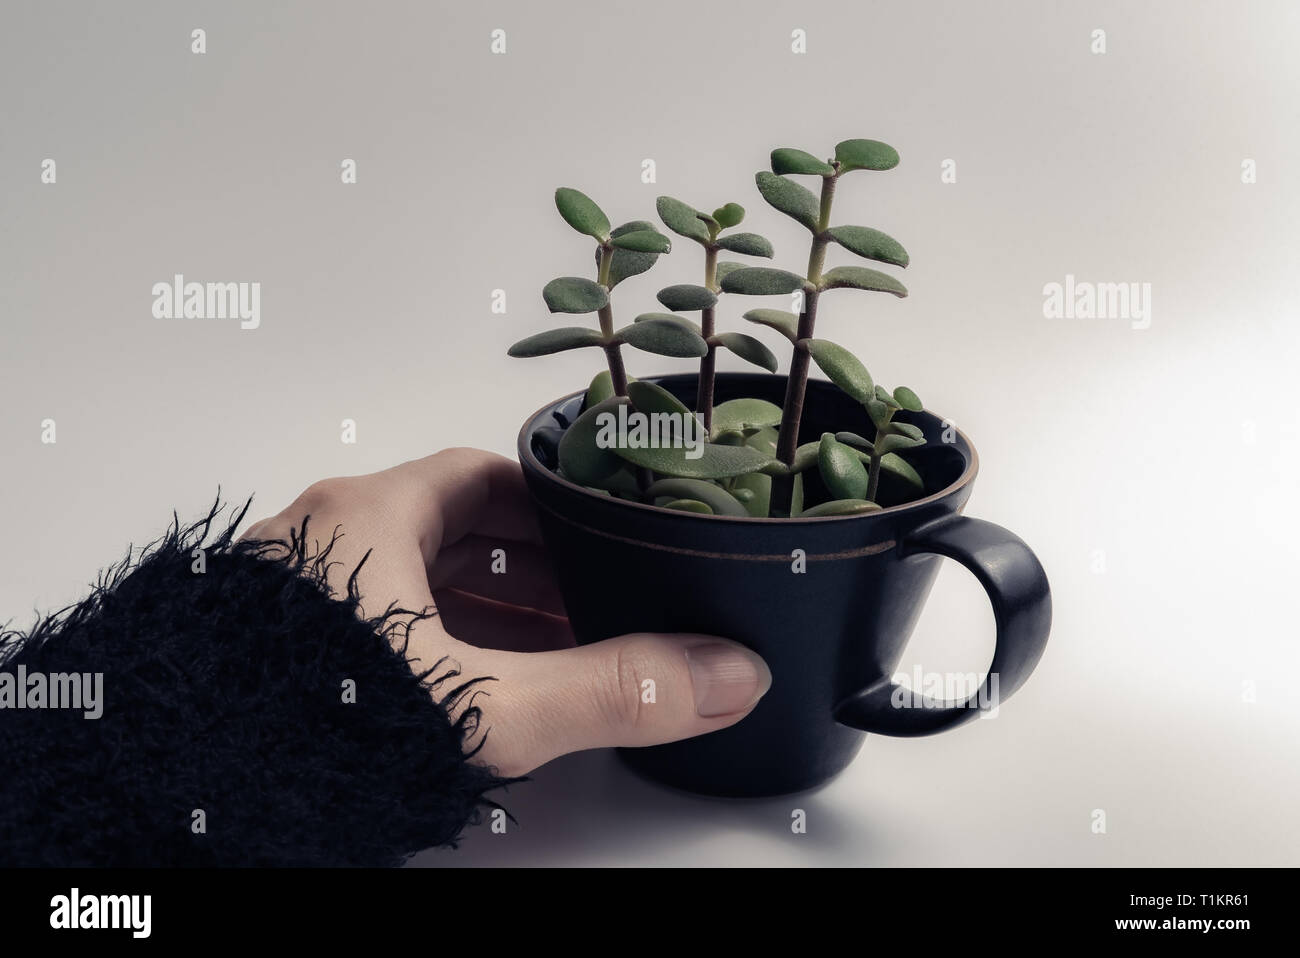 Donna mano che tiene un verde di piante succulente in crescita in un nero tazza di caffè isolato su sfondo bianco con copyspace - Concetto di hipster lifestyle Foto Stock